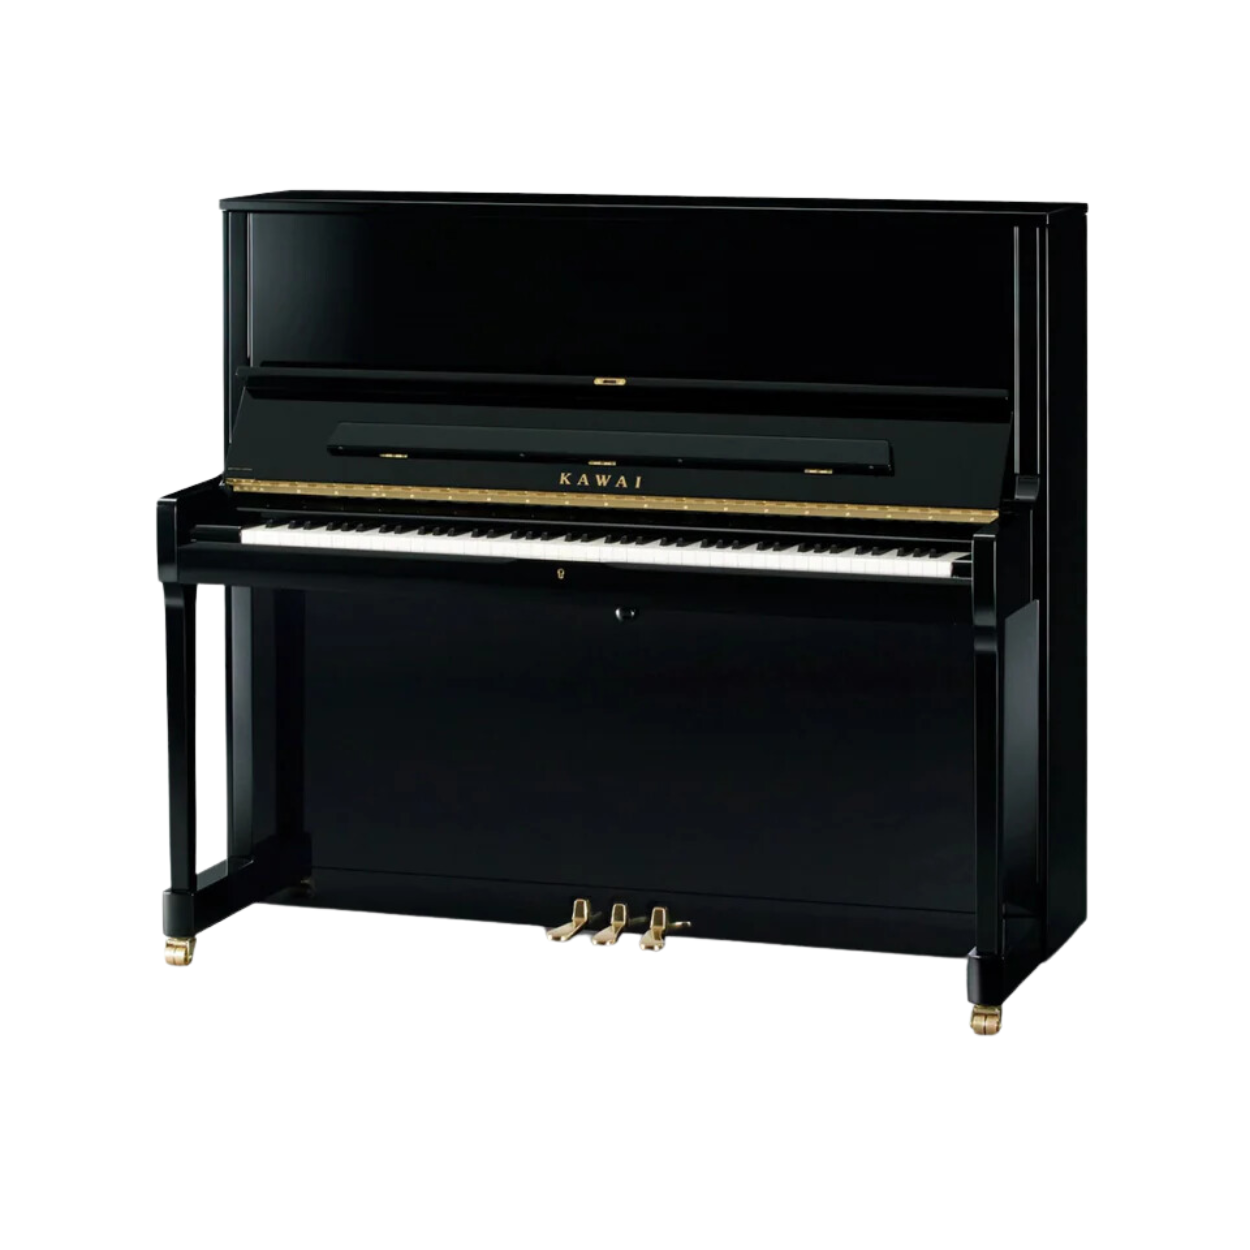 Kawai K-500 [Made In Japan] Professional Acoustic Upright Piano - Ebony Polish